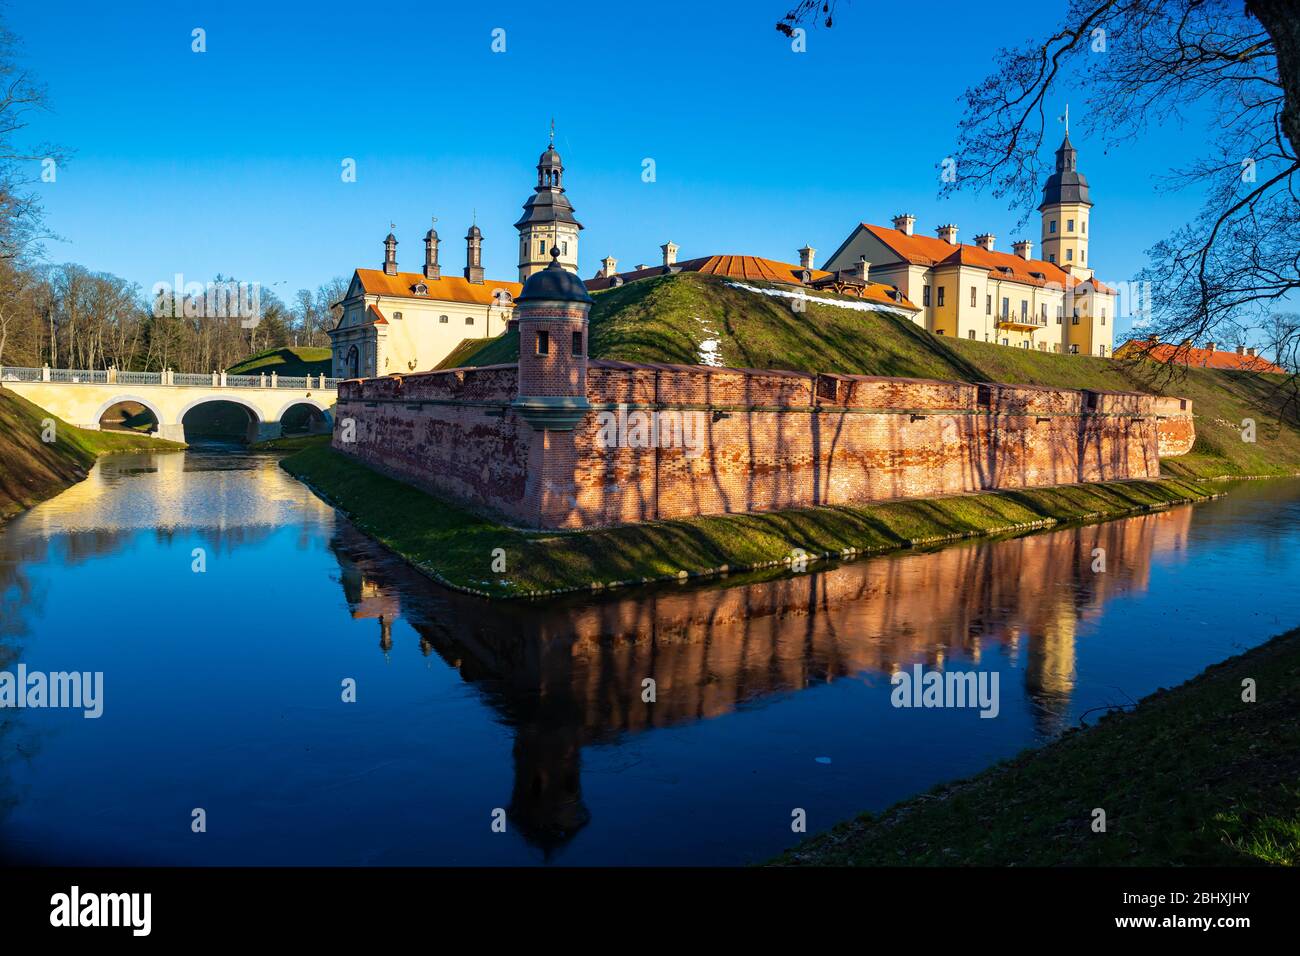 Vue sur le château médiéval de la ville bélarussienne de Nyasvizh, le jour d'hiver, dans la région de Minsk Banque D'Images